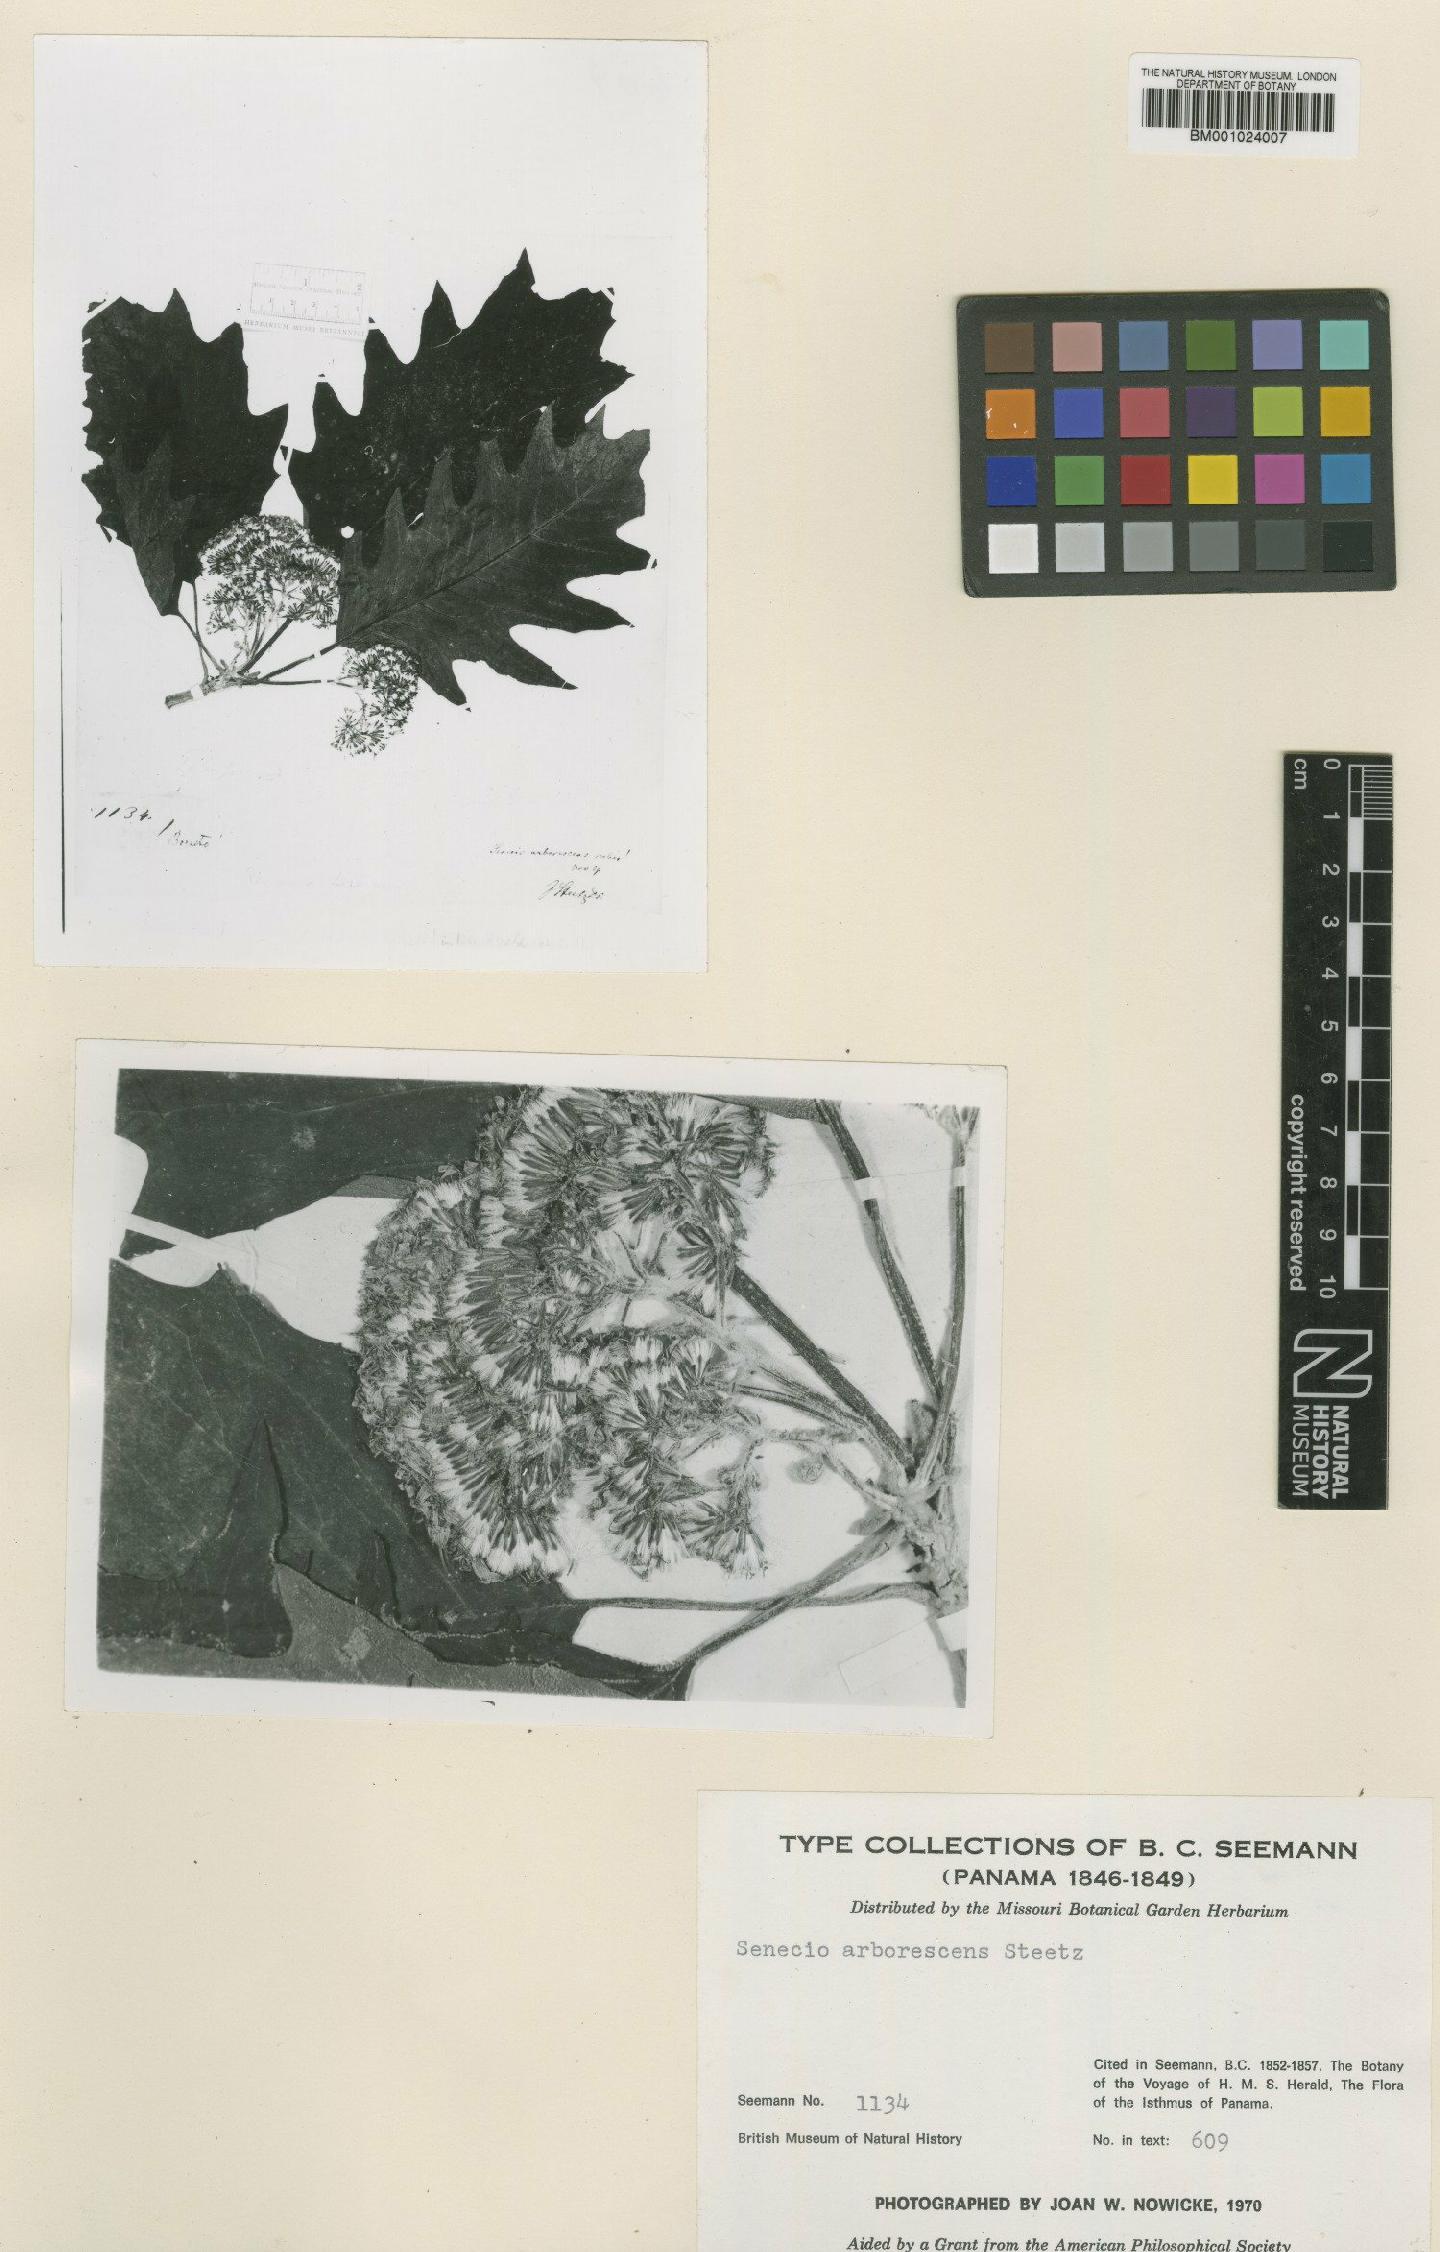 To NHMUK collection (Senecio arborescens Steetz; Type; NHMUK:ecatalogue:621526)